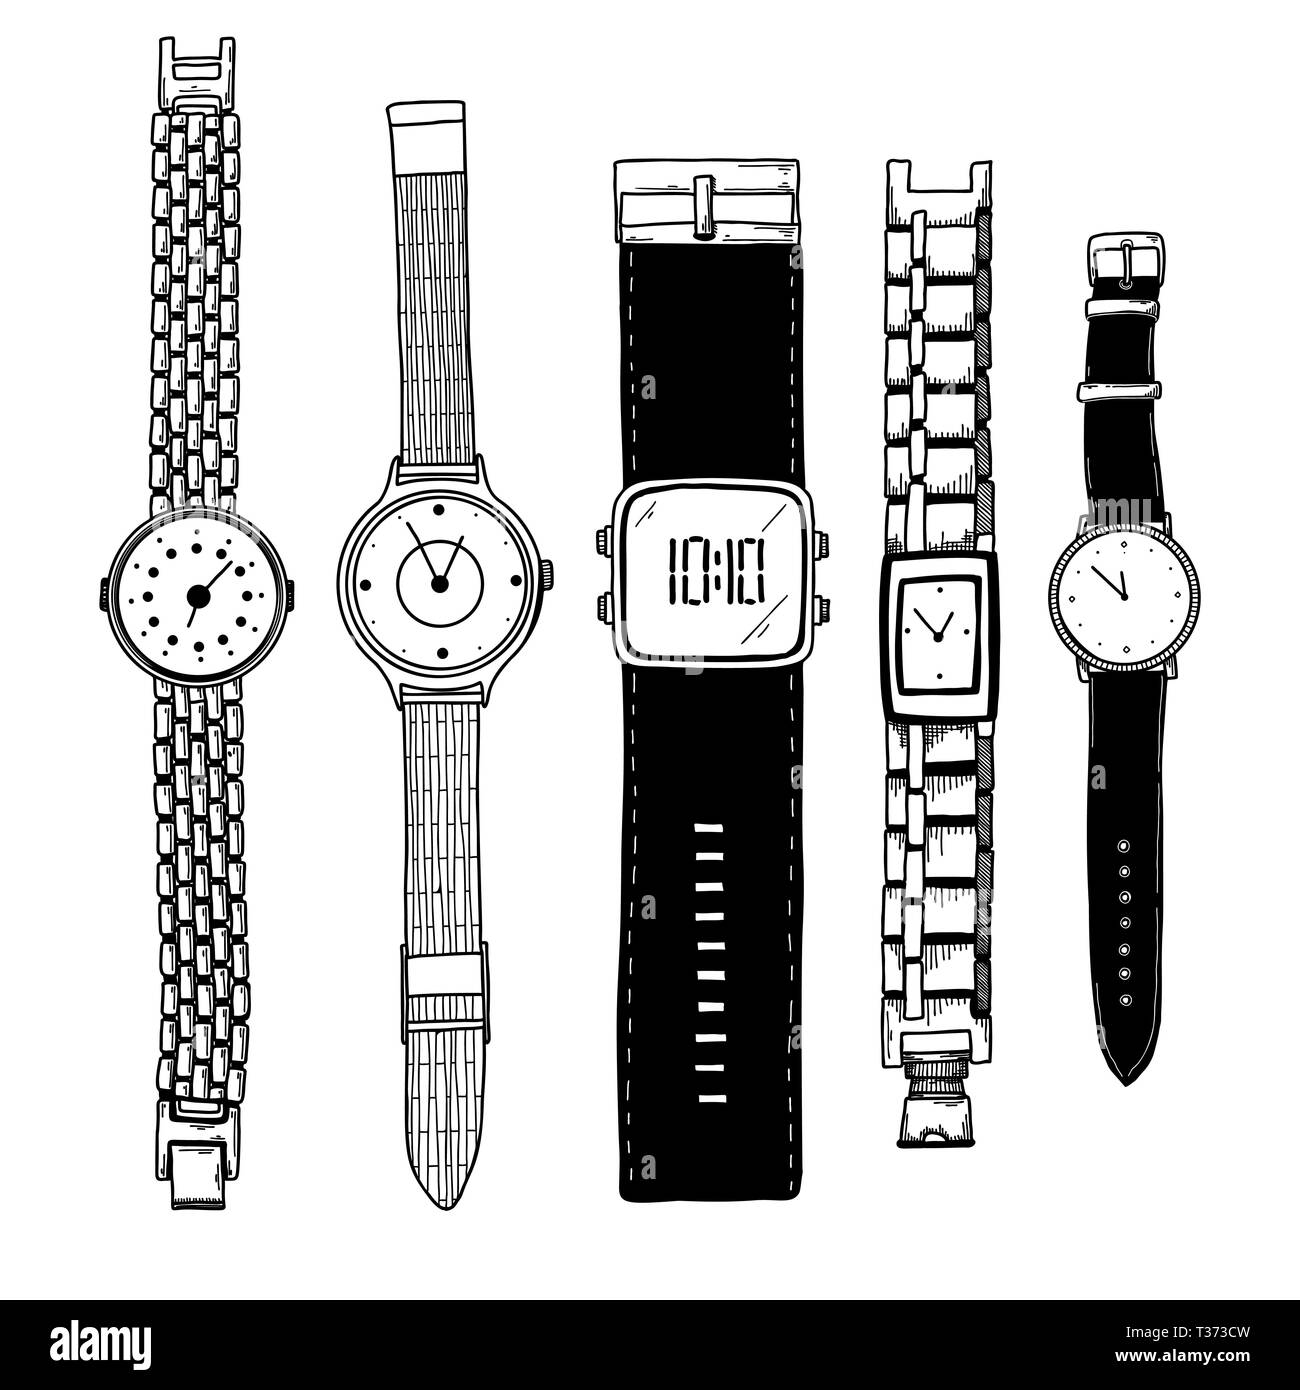 how to draw wristwatch || wristwatch drawing easy || watch drawing || hand watch  drawing - YouTube